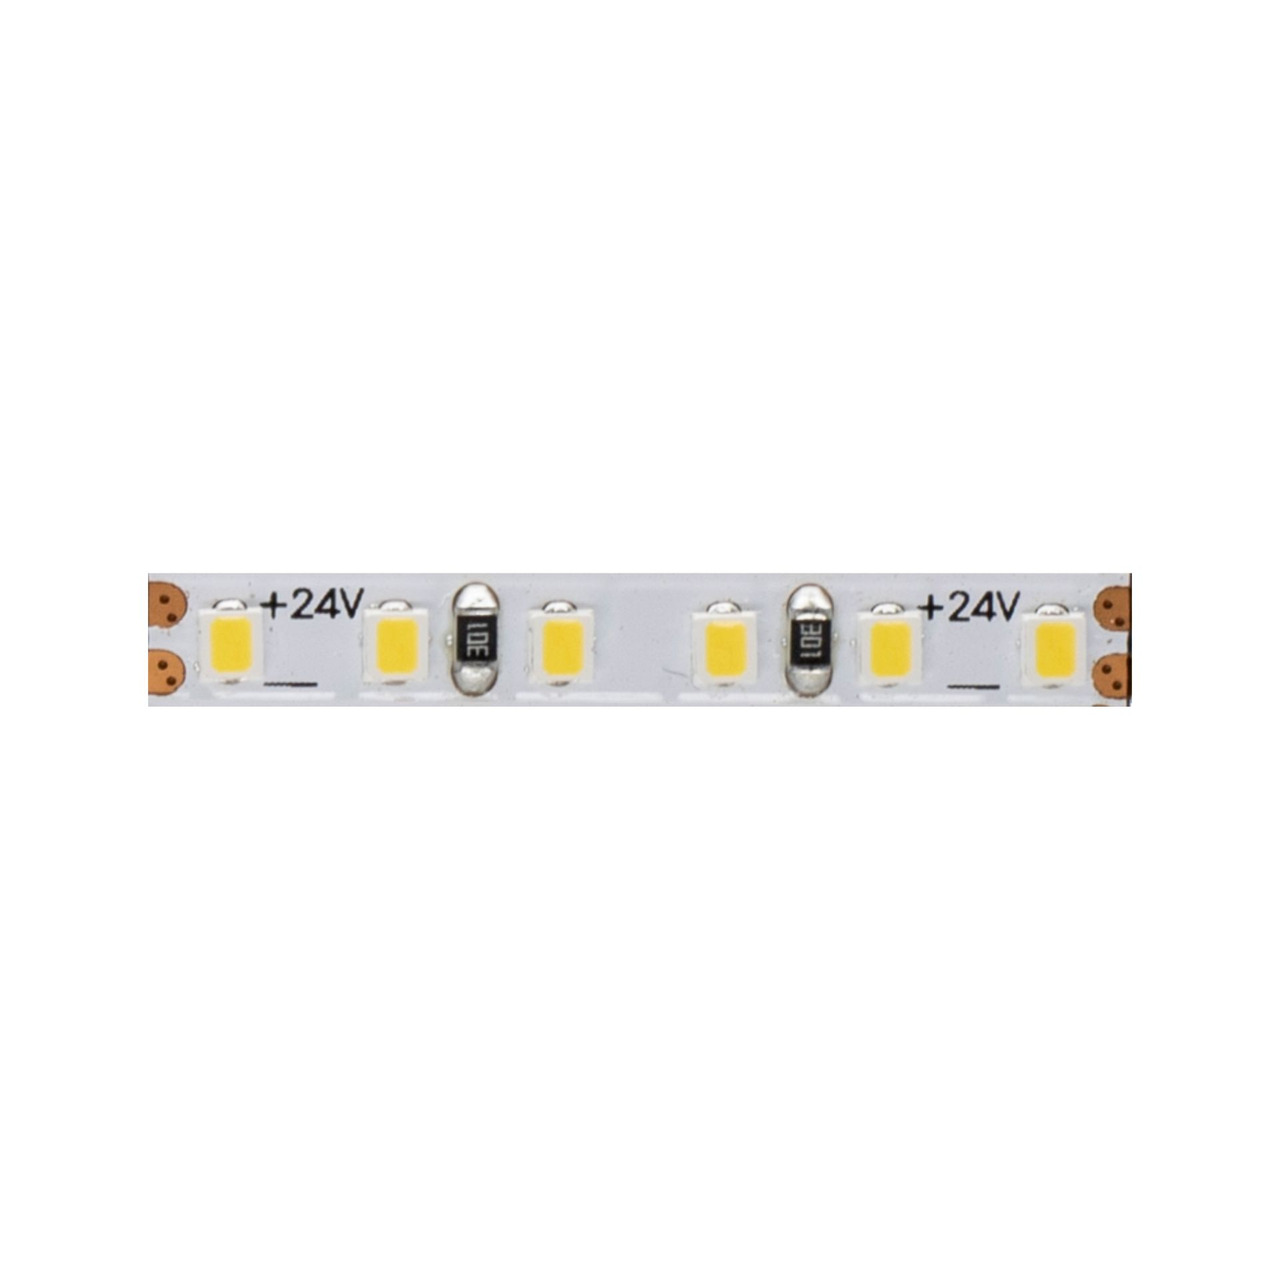 Beneito 5-m-LED-Streifen FINE-49- 50 W- 24 V DC- 4000 K- 90 Ra- 10 W-m- 770 lm-m- 204 LEDs-m- IP20